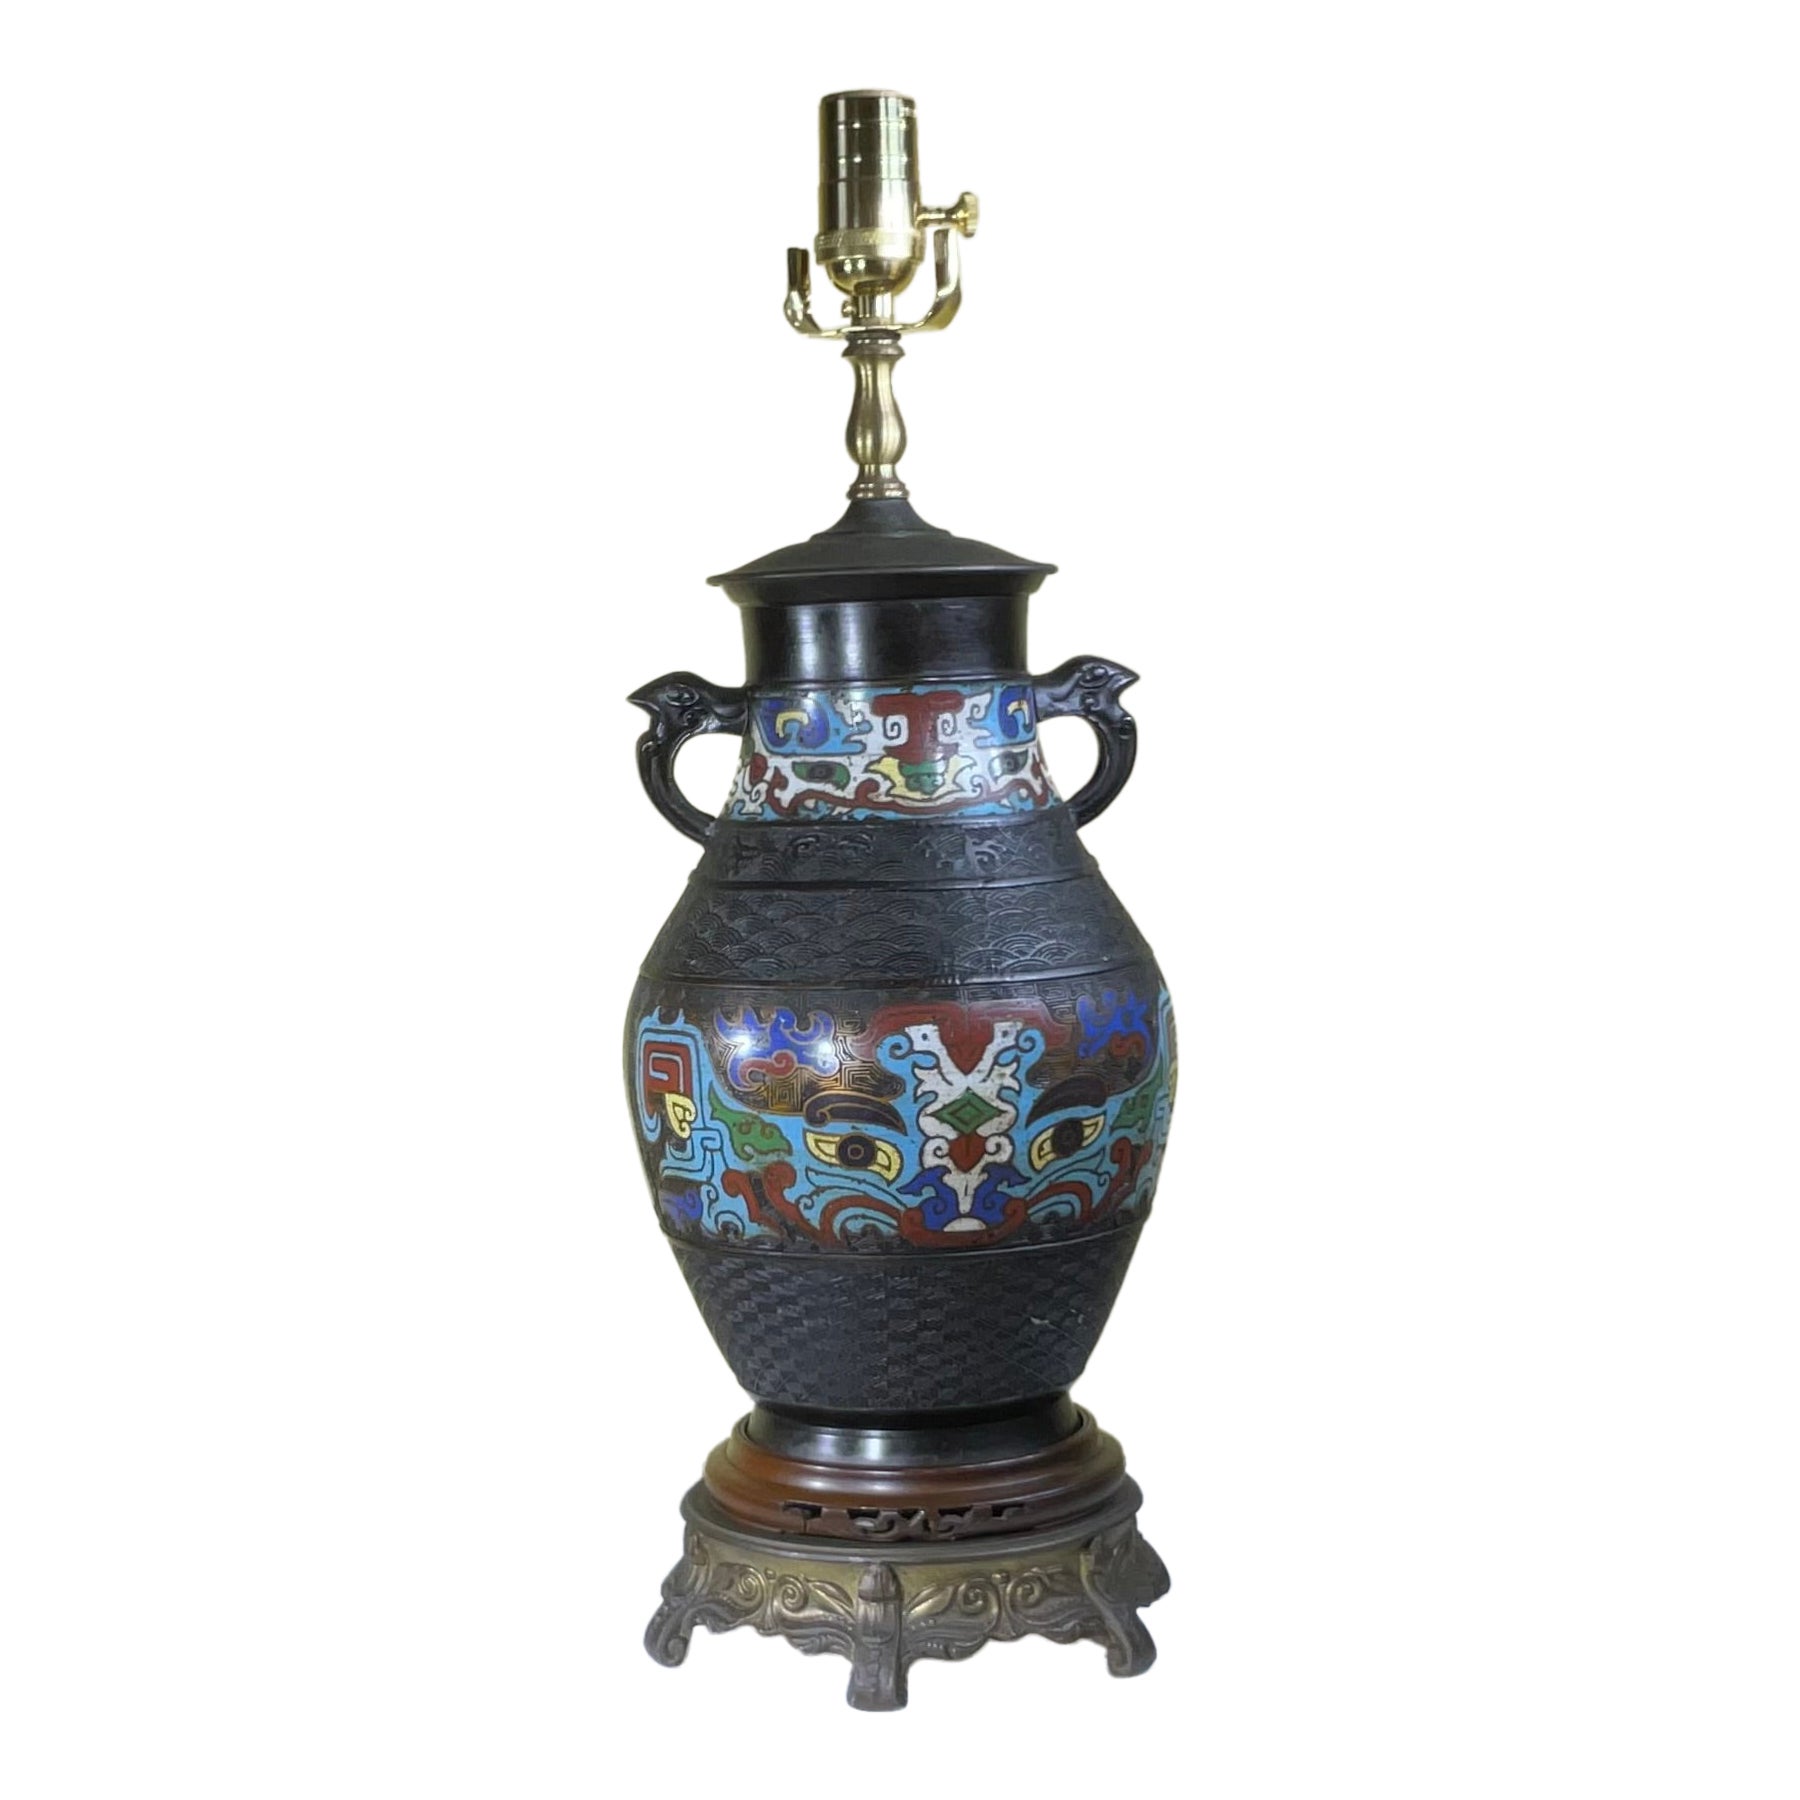 Antique Japanese Cloisonne Table Lamp